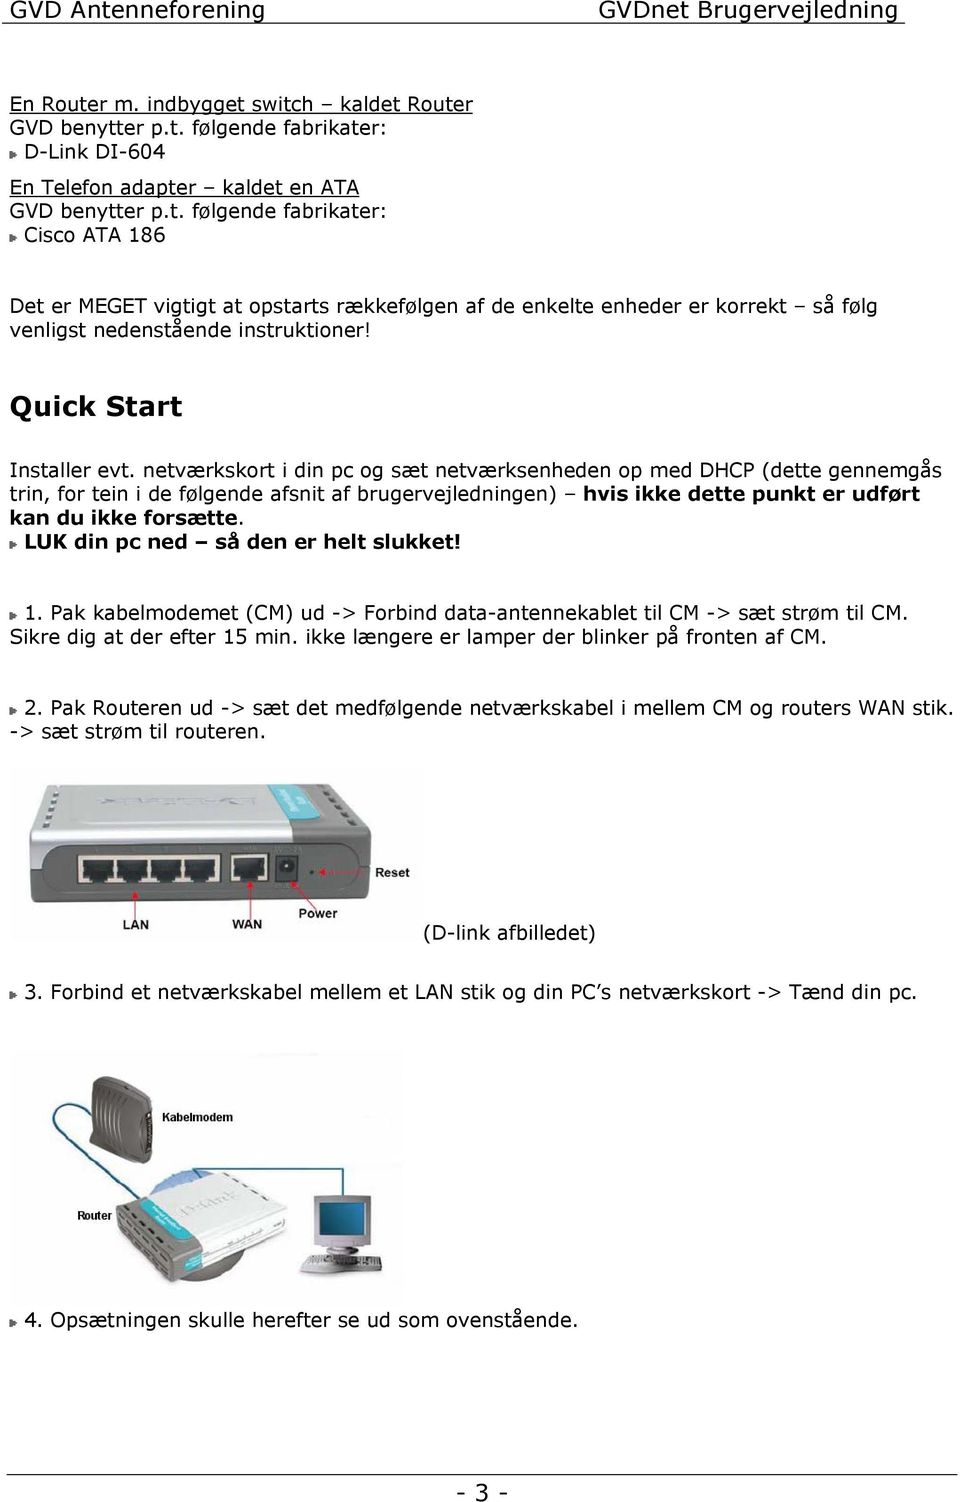 GVDnet. Gug-Visse-Dall Antenneforenings internetløsning. Brugervejledning -  PDF Free Download